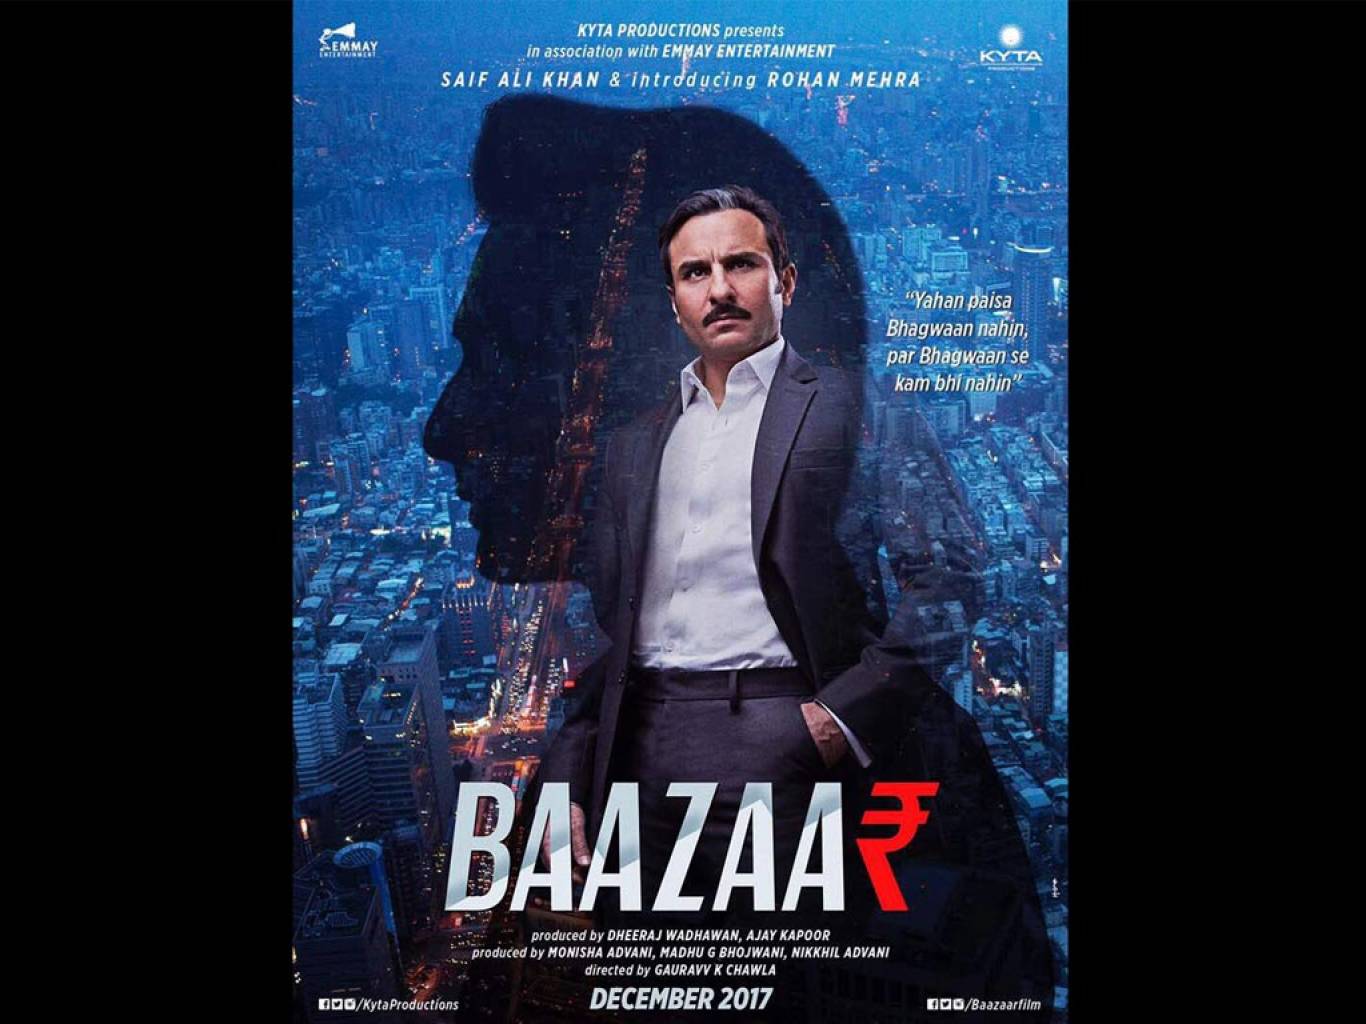 Bazaar Movie HD Wallpaper. Bazaar HD Movie Wallpaper Free Download (1080p to 2K)